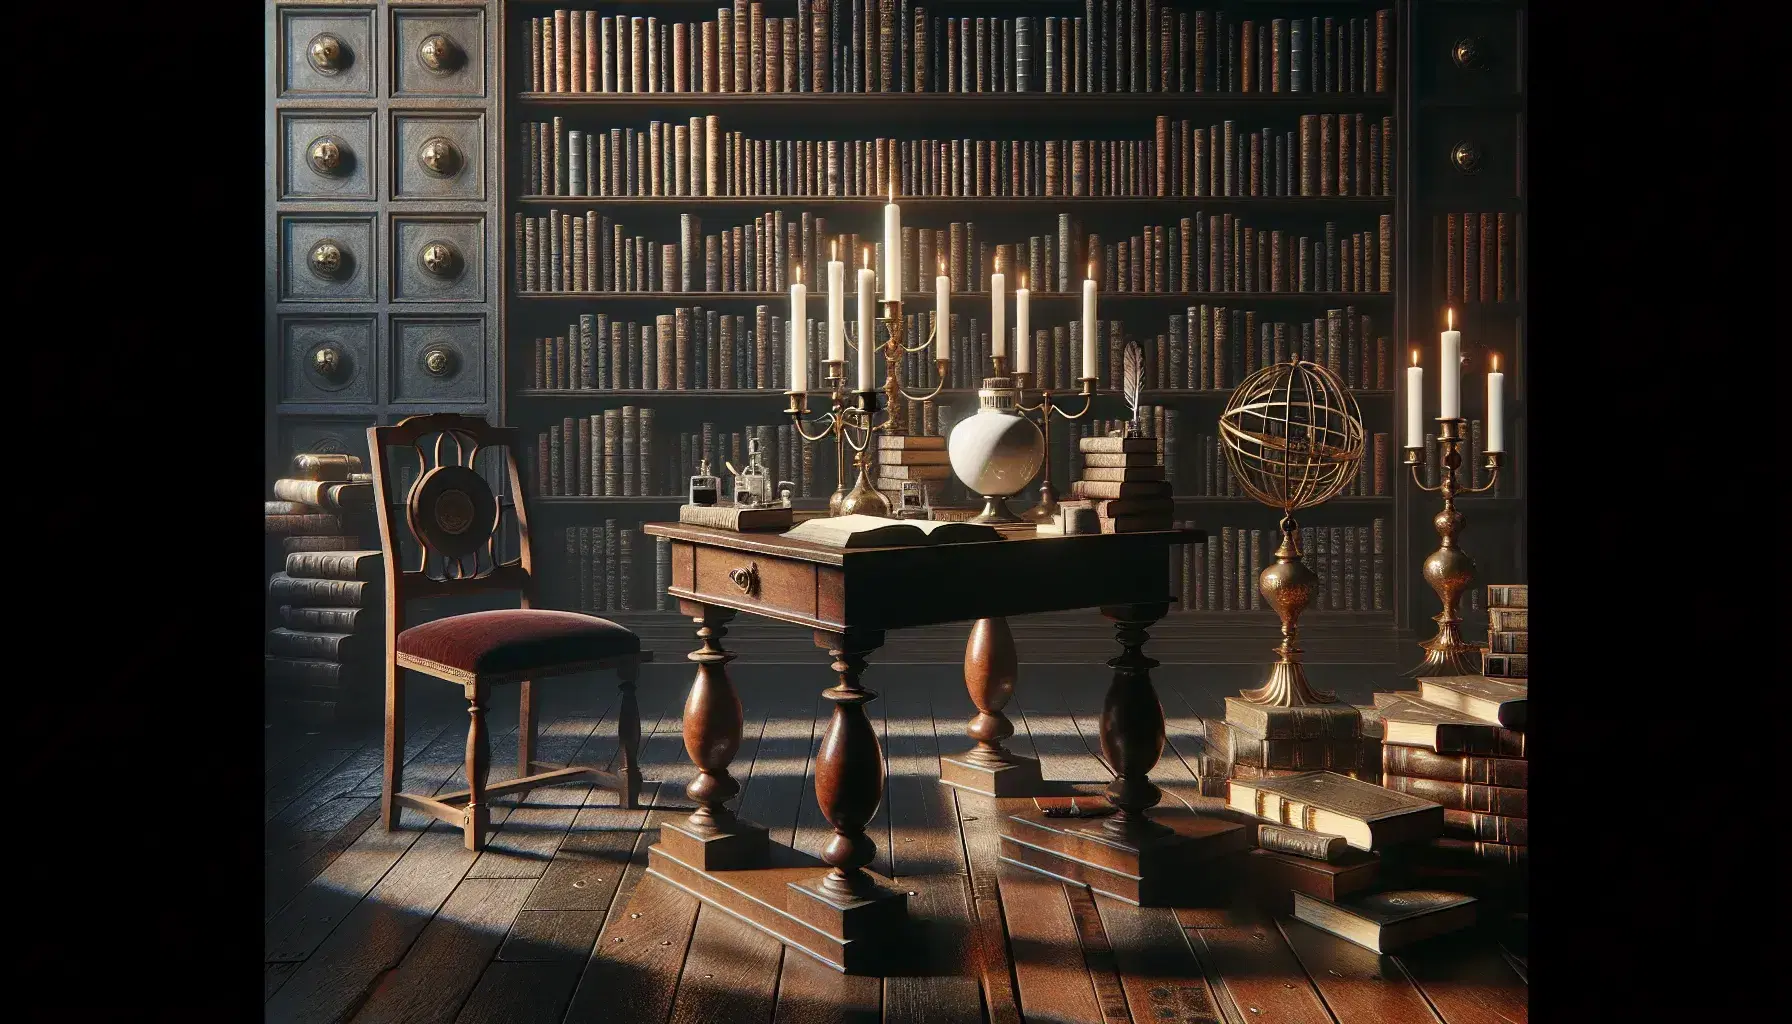 Biblioteca antigua con estantes de madera oscura llenos de libros, mesa con candelabro y tintero, silla de terciopelo rojo y esfera armilar dorada.